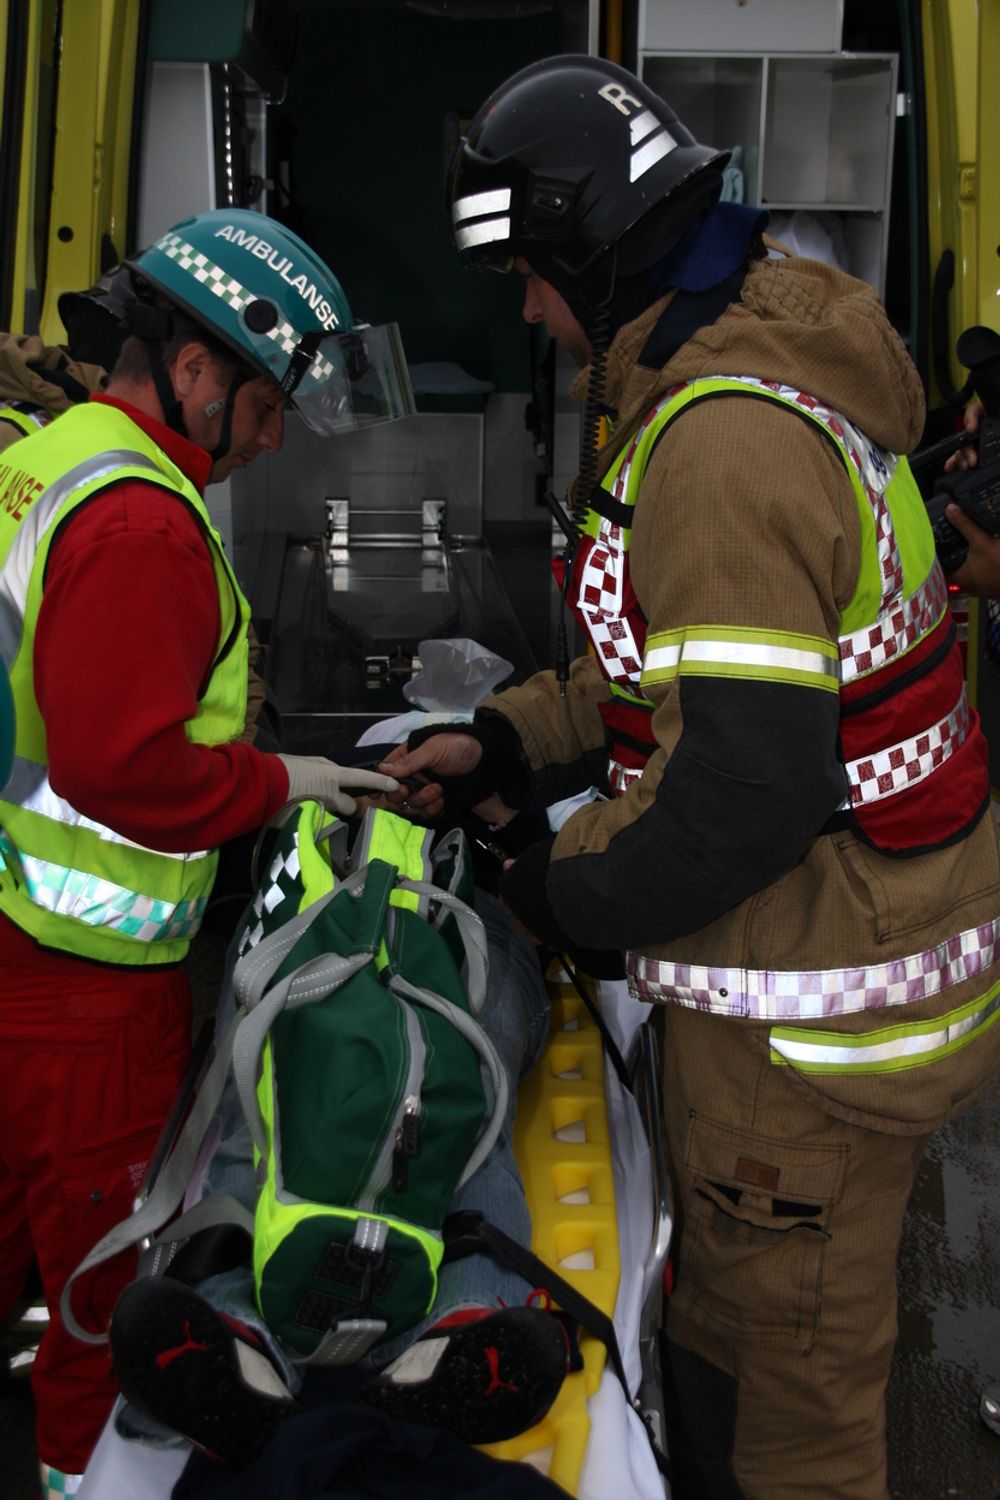 SKADET: En skadd fører flyttes over i ambulansen.